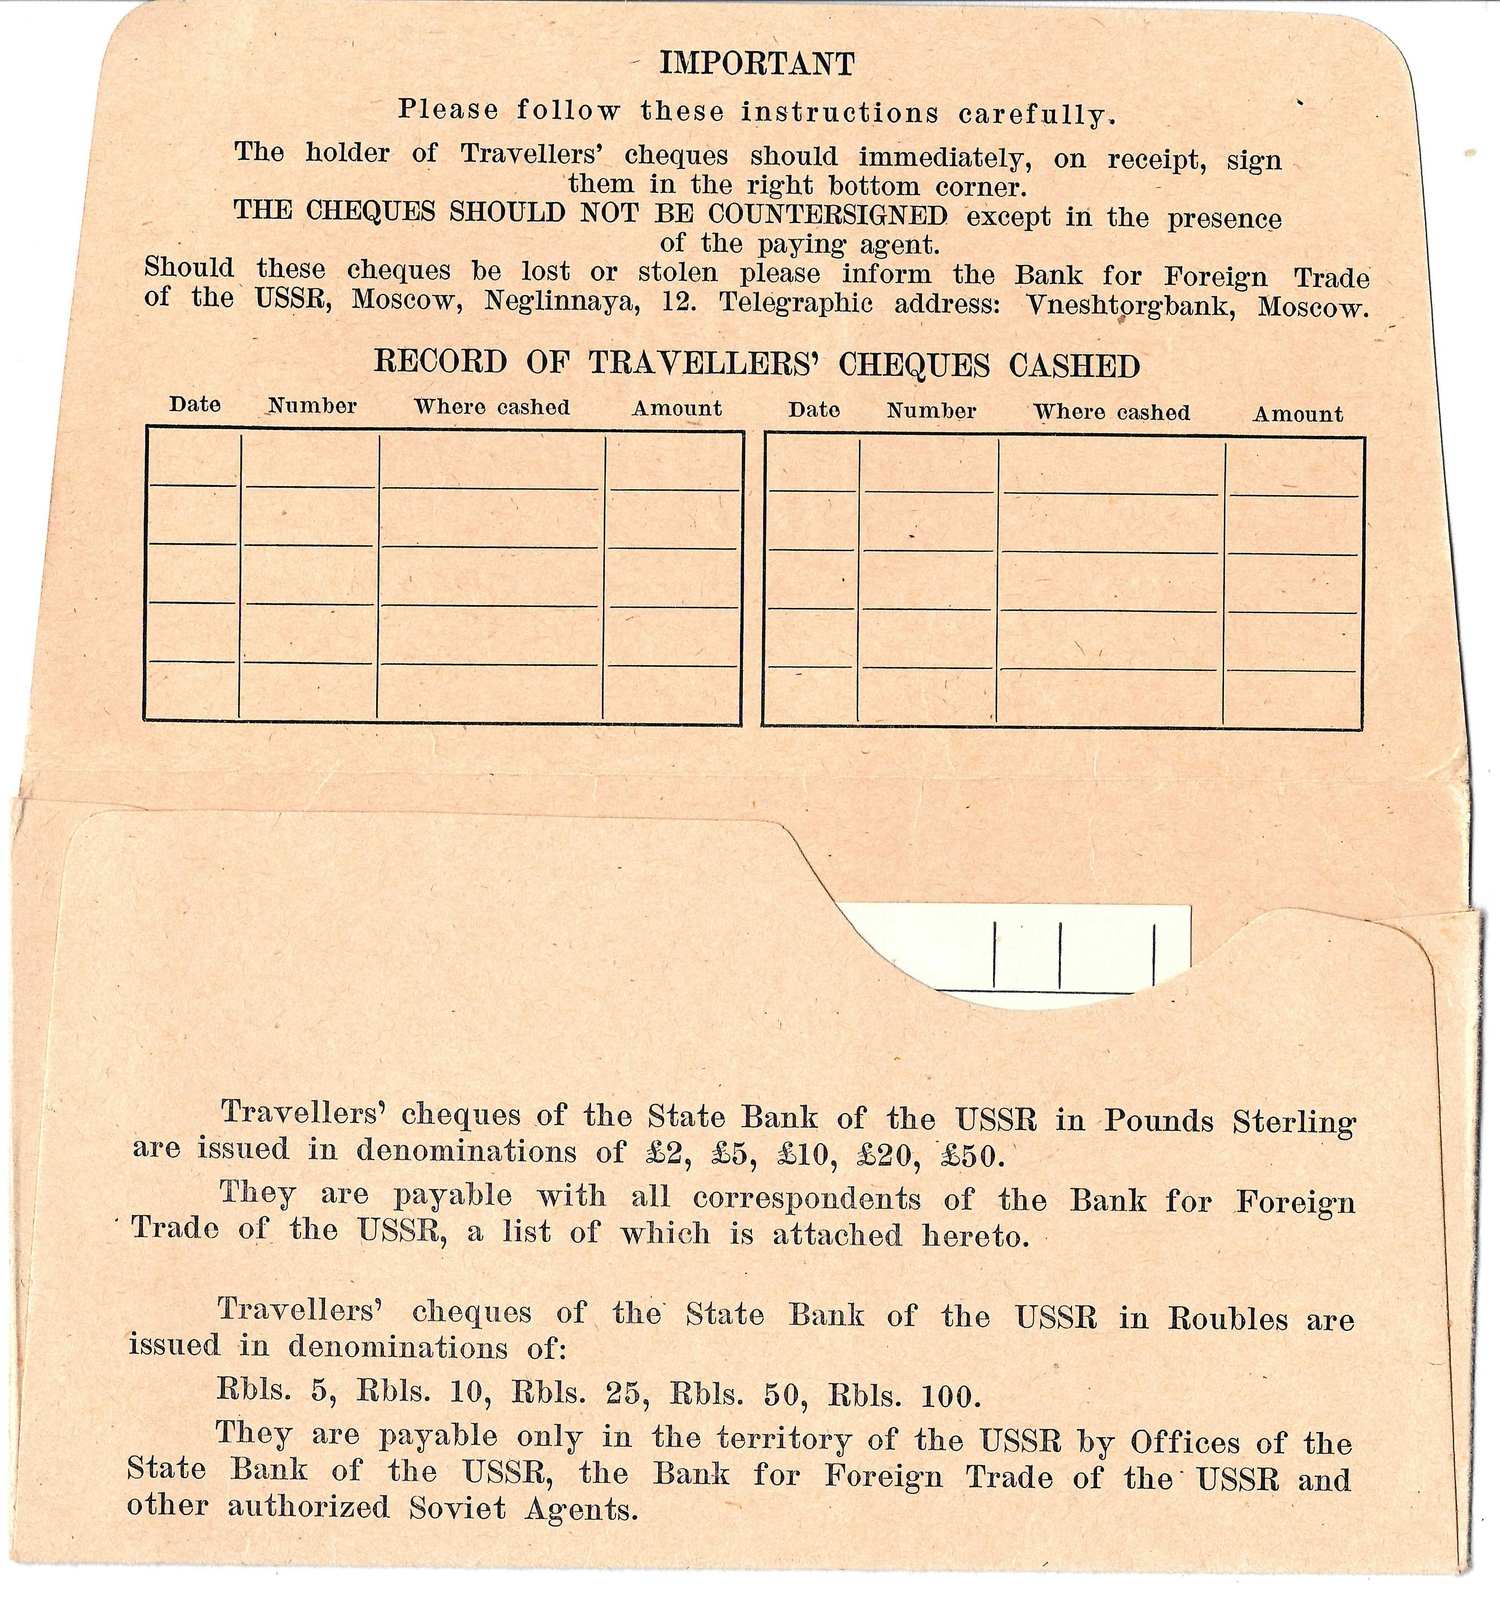 Конверт для хранения дорожных чеков Государственного банка СССР. 1960-е годы.